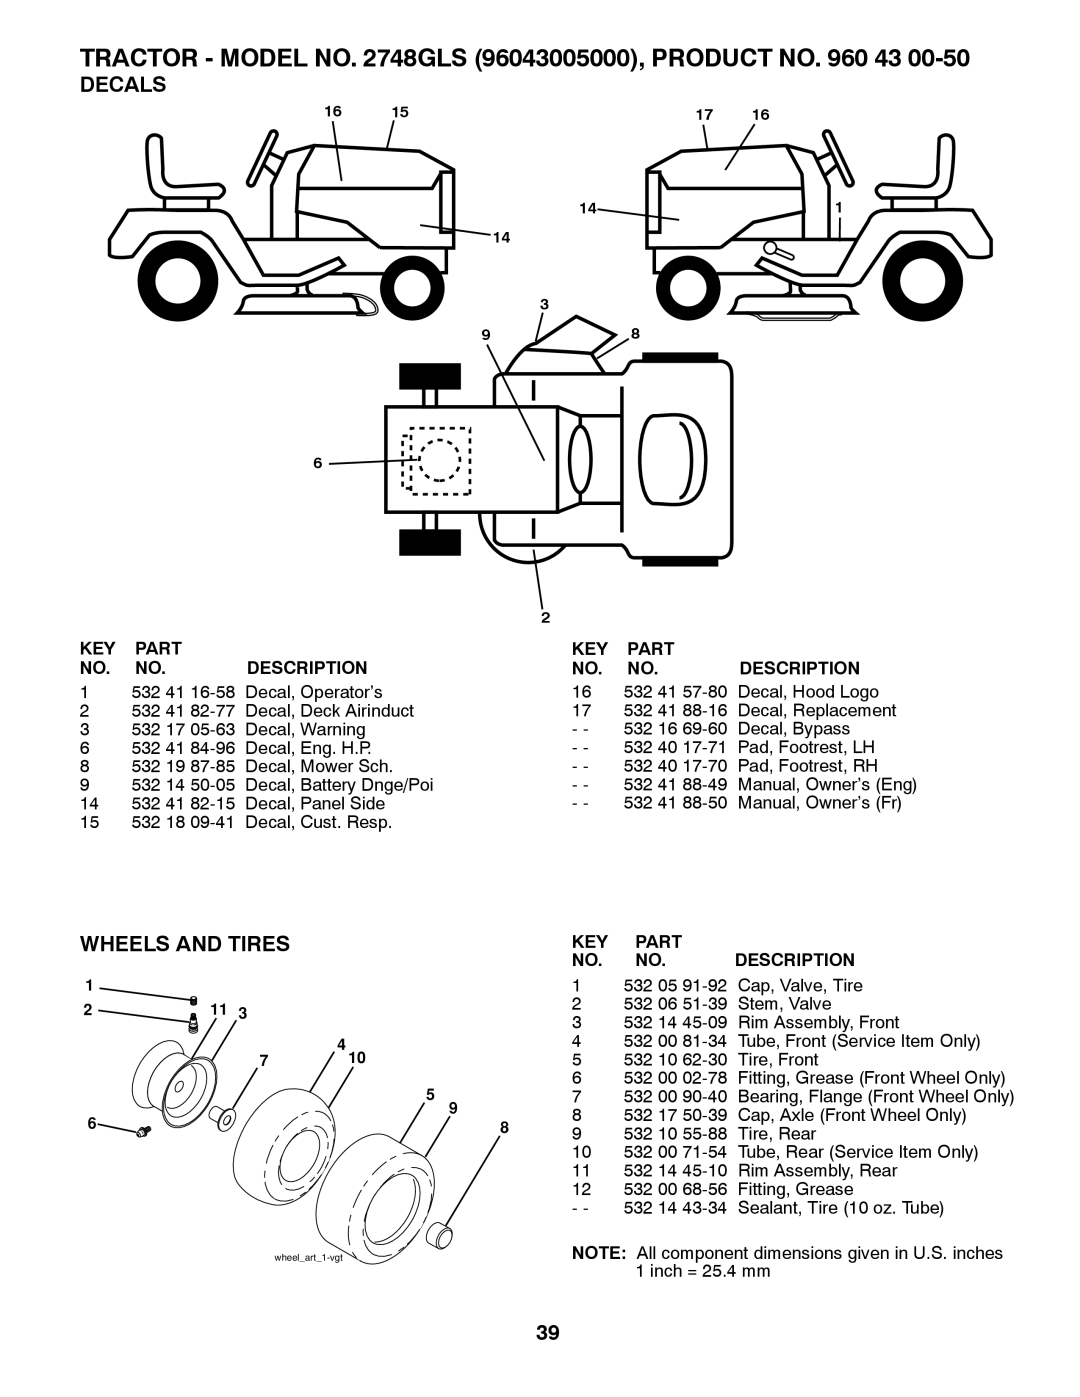 Husqvarna 2748 GLS (CA) manual Decals, Wheels And Tires, Part, Description 